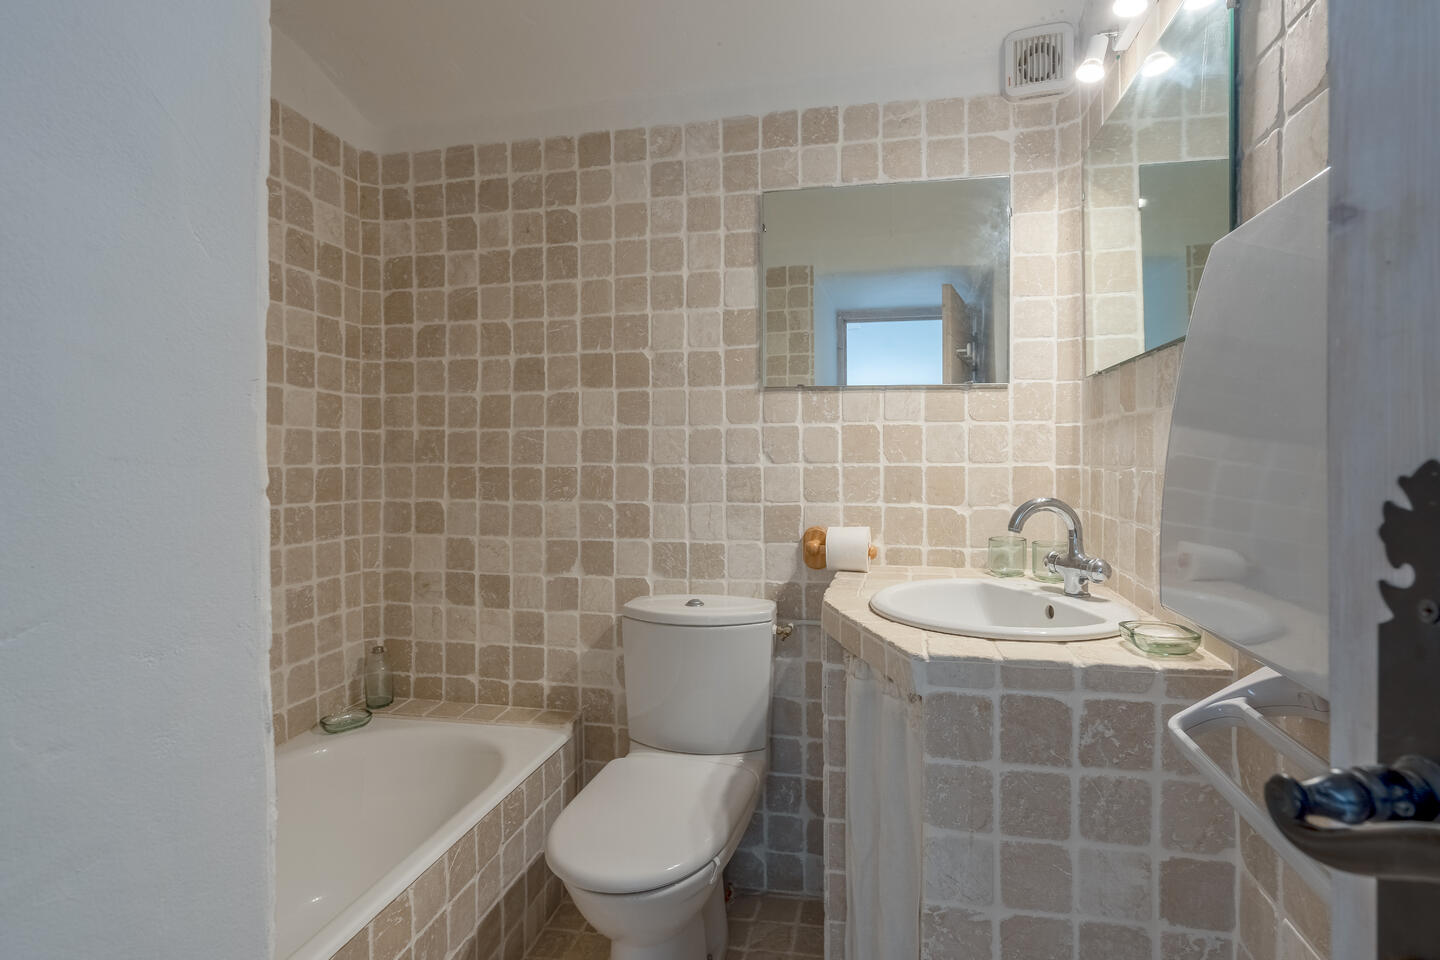 45 - Villa Goult: Villa: Bathroom - Annex bathroom 